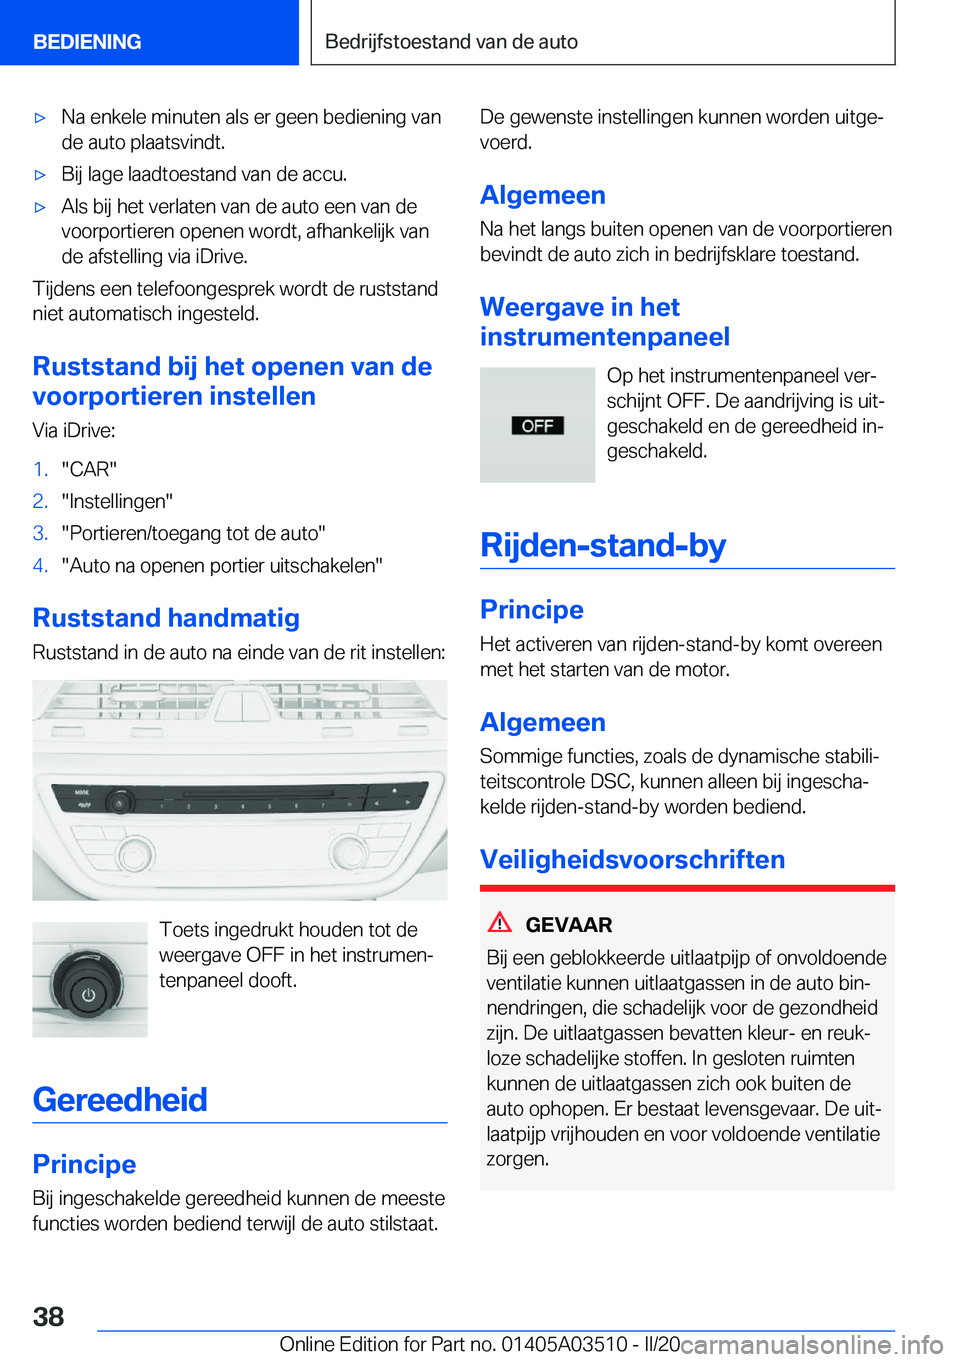 BMW X3 2020  Instructieboekjes (in Dutch) 'x�N�a��e�n�k�e�l�e��m�i�n�u�t�e�n��a�l�s��e�r��g�e�e�n��b�e�d�i�e�n�i�n�g��v�a�n�d�e��a�u�t�o��p�l�a�a�t�s�v�i�n�d�t�.'x�B�i�j��l�a�g�e��l�a�a�d�t�o�e�s�t�a�n�d��v�a�n��d�e��a�c